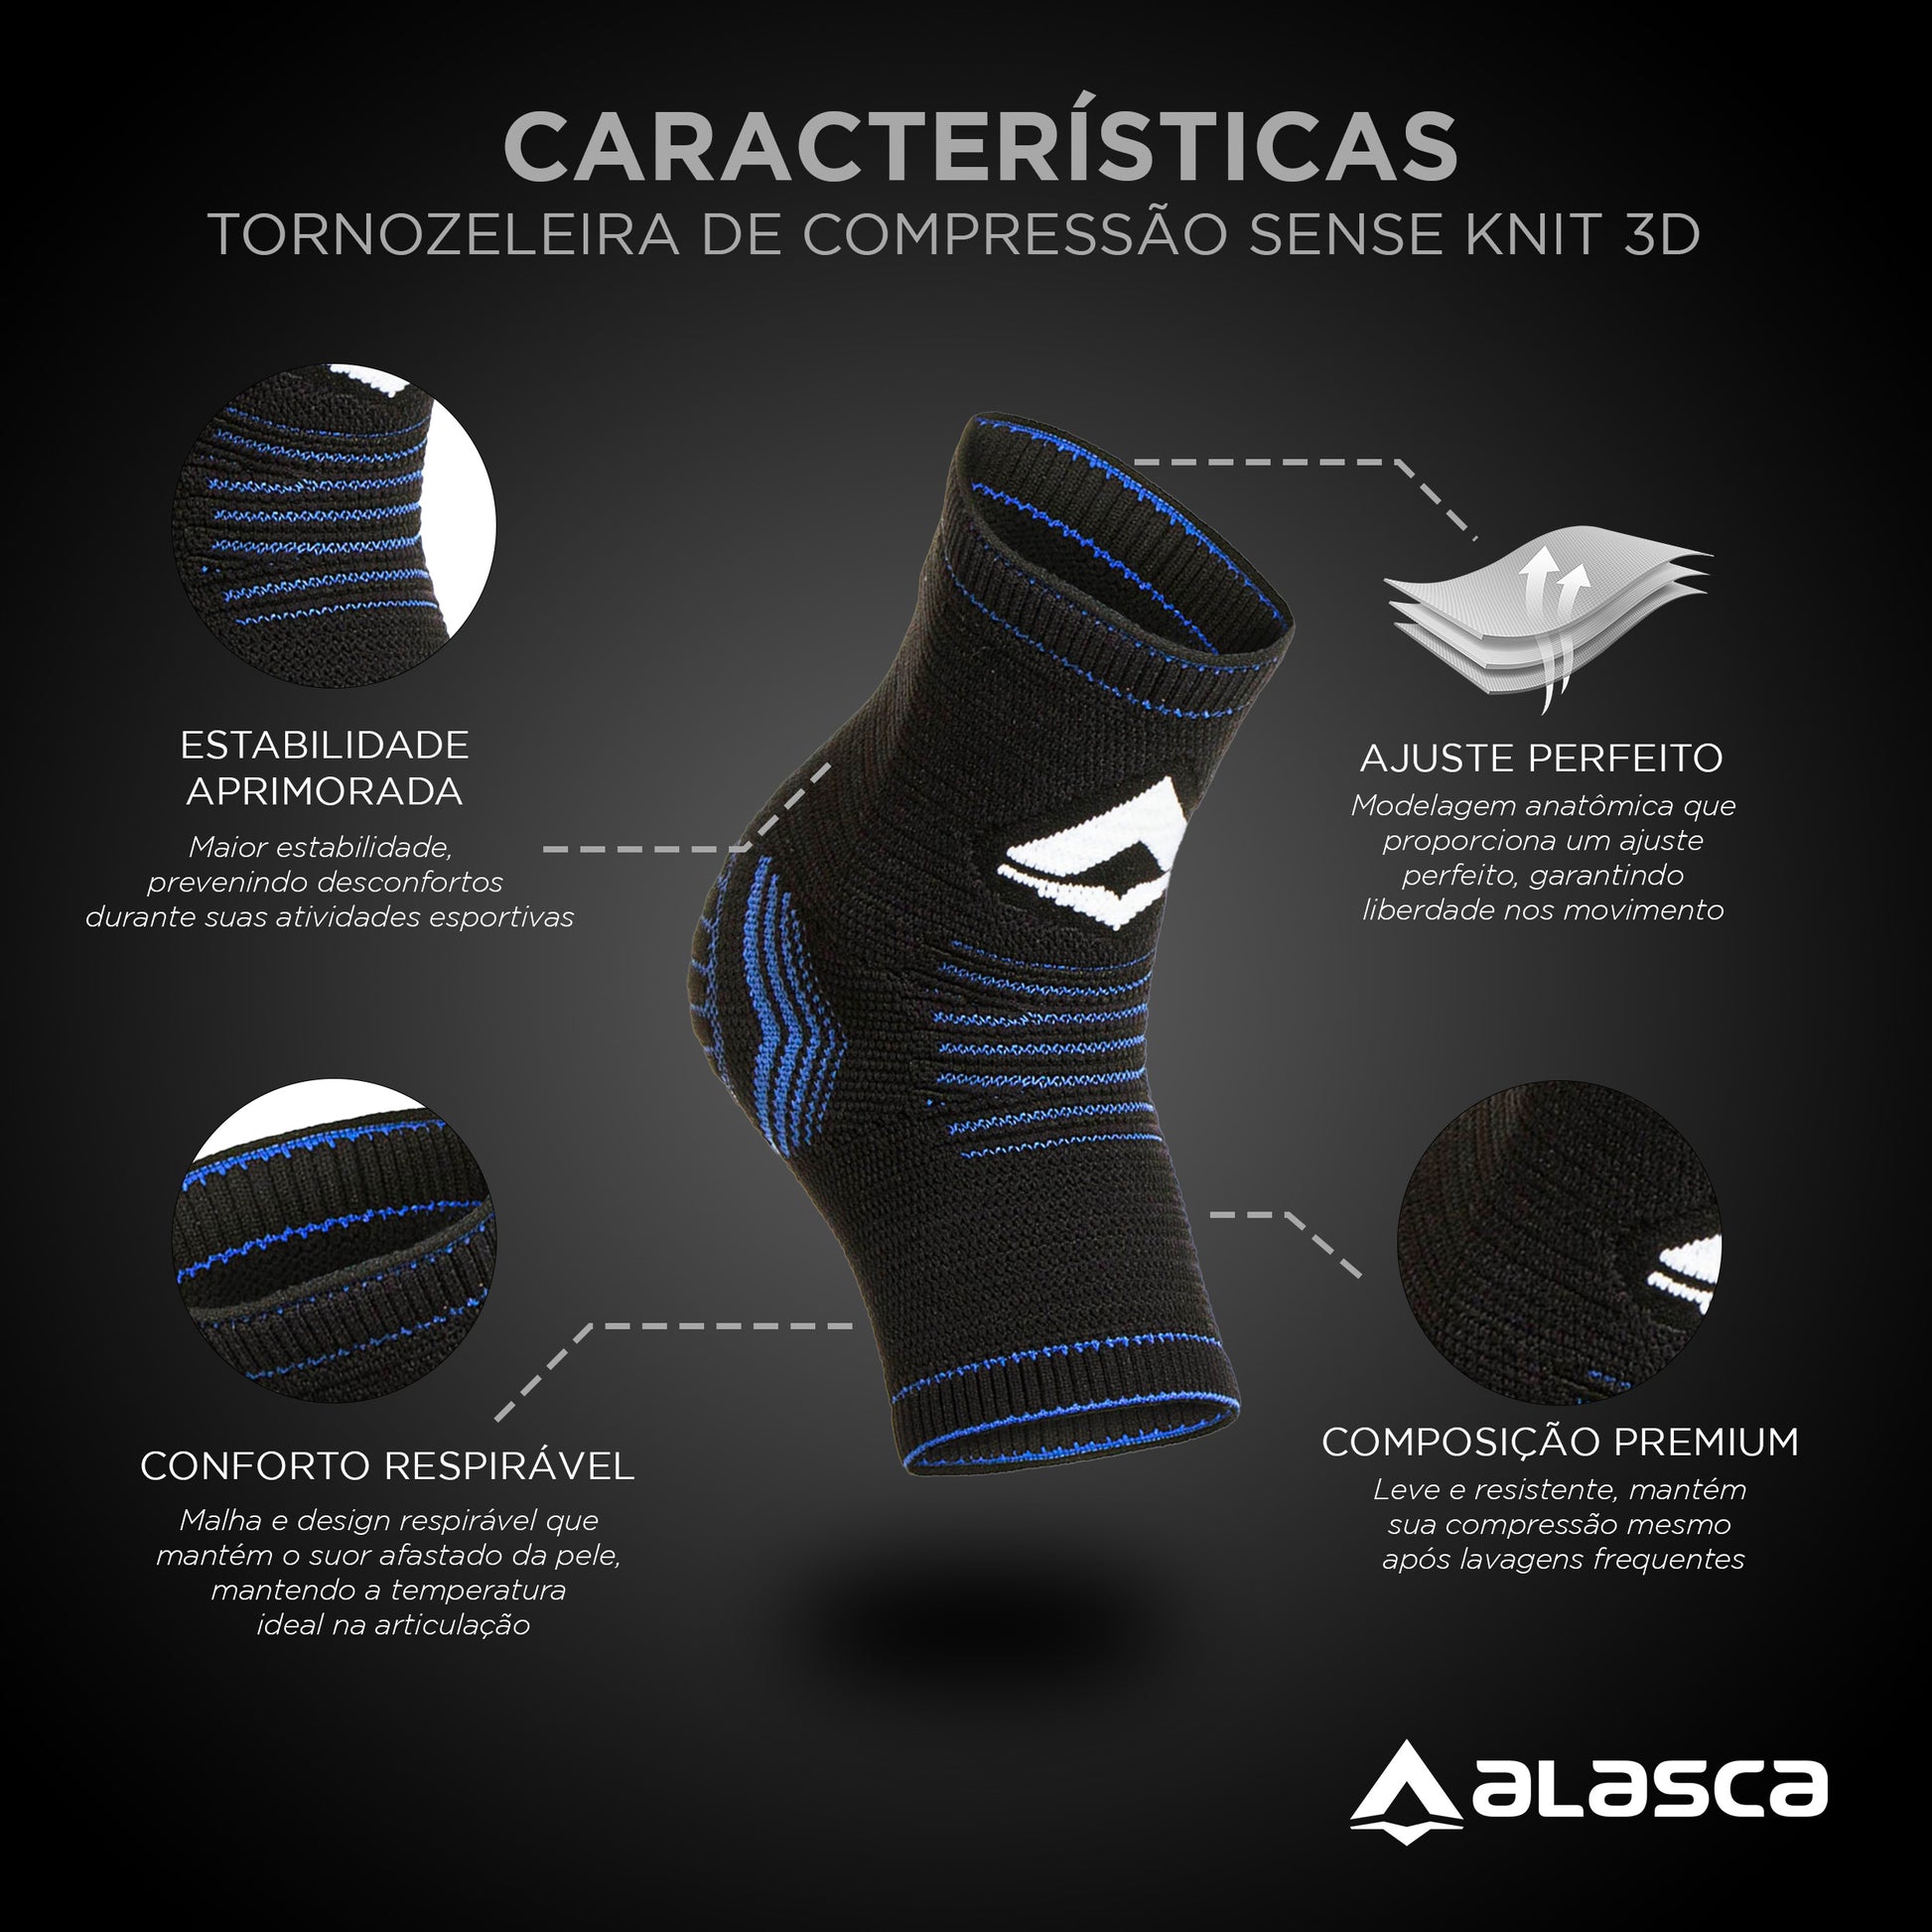 Tornozeleira de Compressão Sense Knit 3D Alasca Alasca Tecnologia Ltda